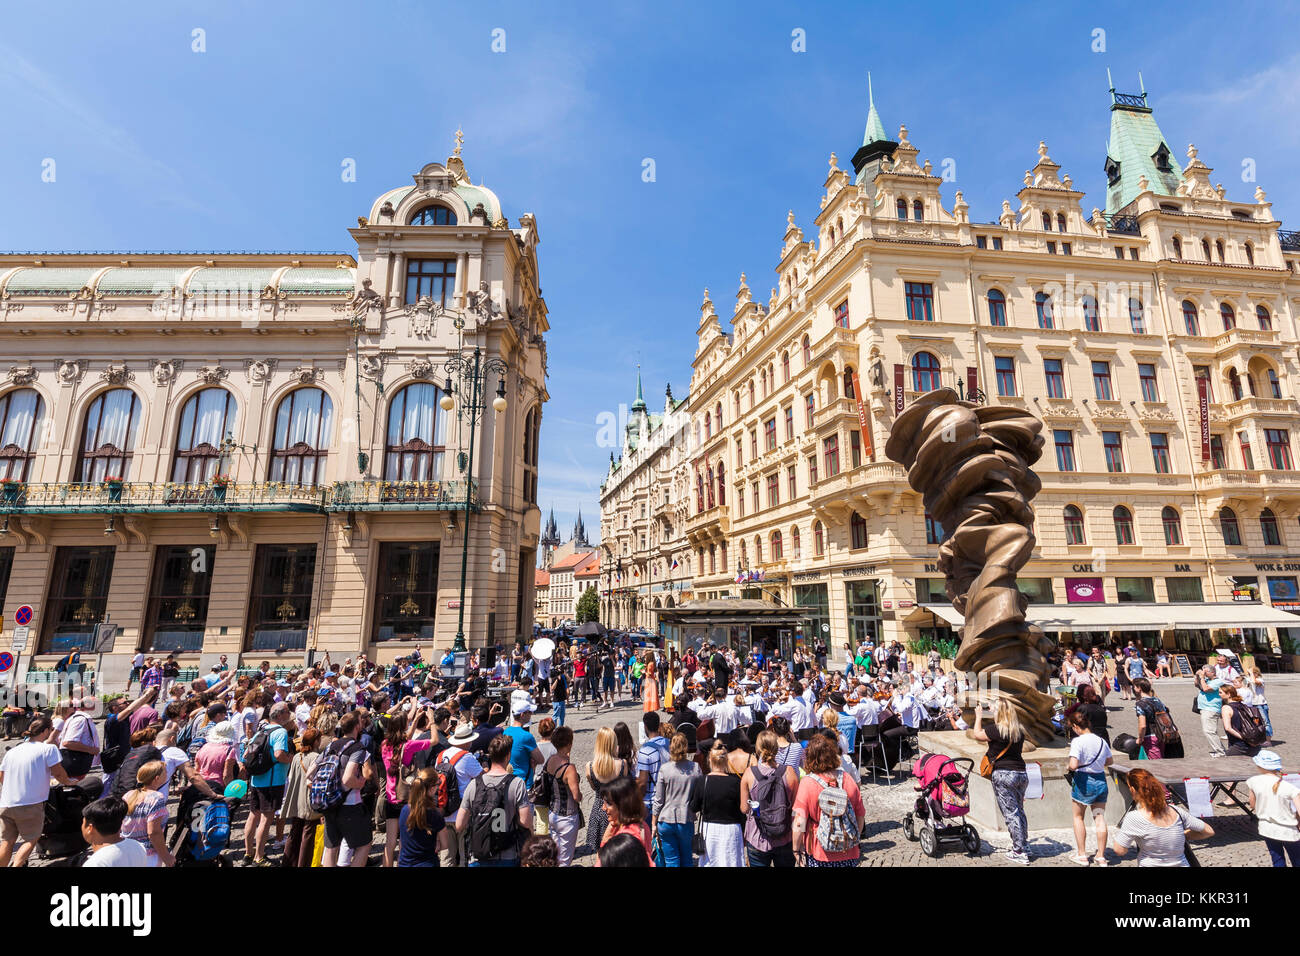 Tschechien, Prag, Stadtzentrum, Platz der Republik, Darstellung Haus auf der linken Seite, Musik Event mit dem Prager Symphonie Orchester, asiatische Sänger Stockfoto